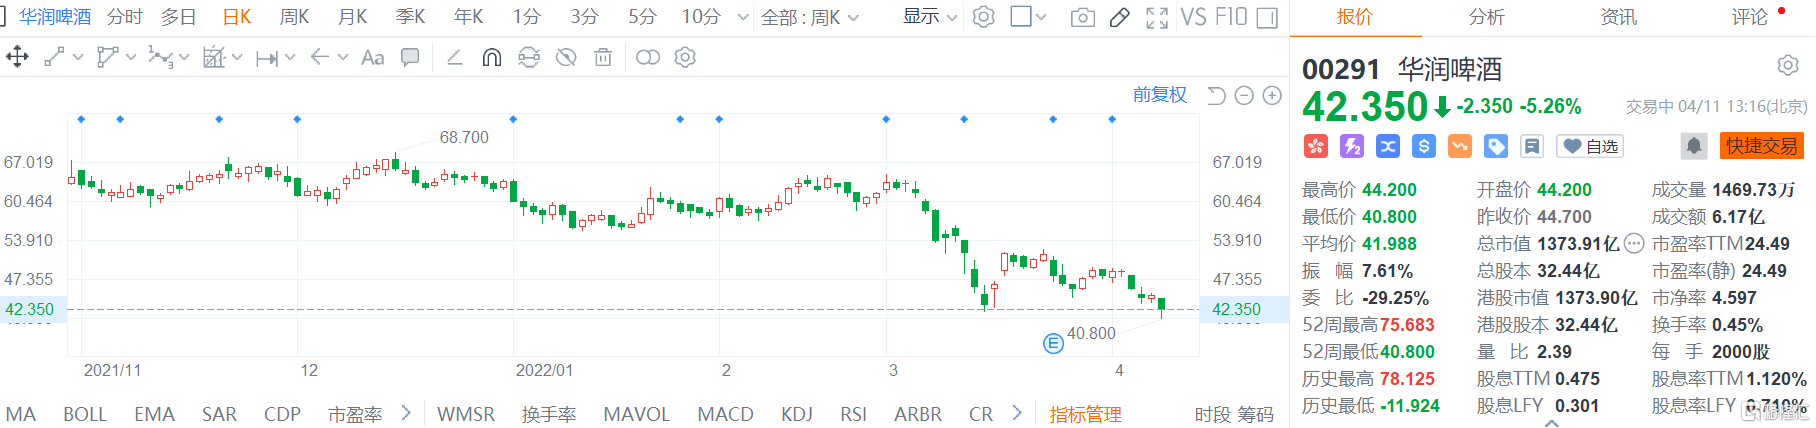 华润啤酒(0291.HK)股价弱势震荡 盘中最大跌幅逾8%